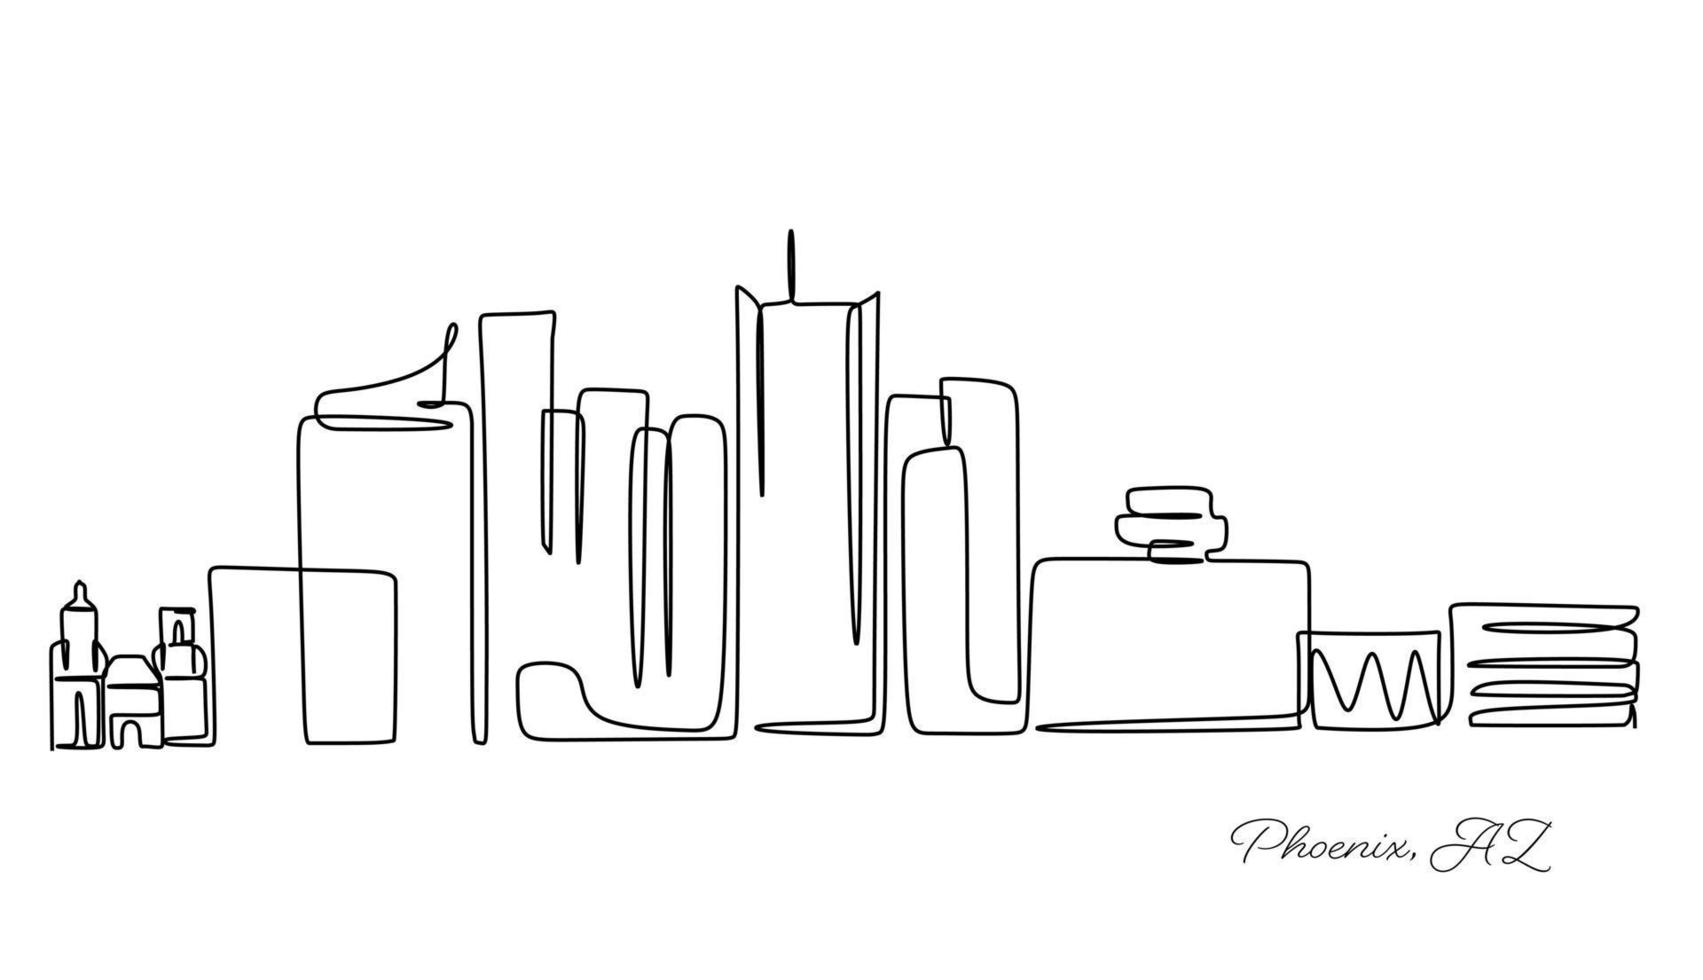 doorlopende lijntekening van de skyline van de stad Phoenix, Verenigde Staten. mooi oriëntatiepunt. wereld landschap toerisme en reizen vakantie. bewerkbare stijlvolle lijn tekenen ontwerp vectorillustratie met één lijn vector